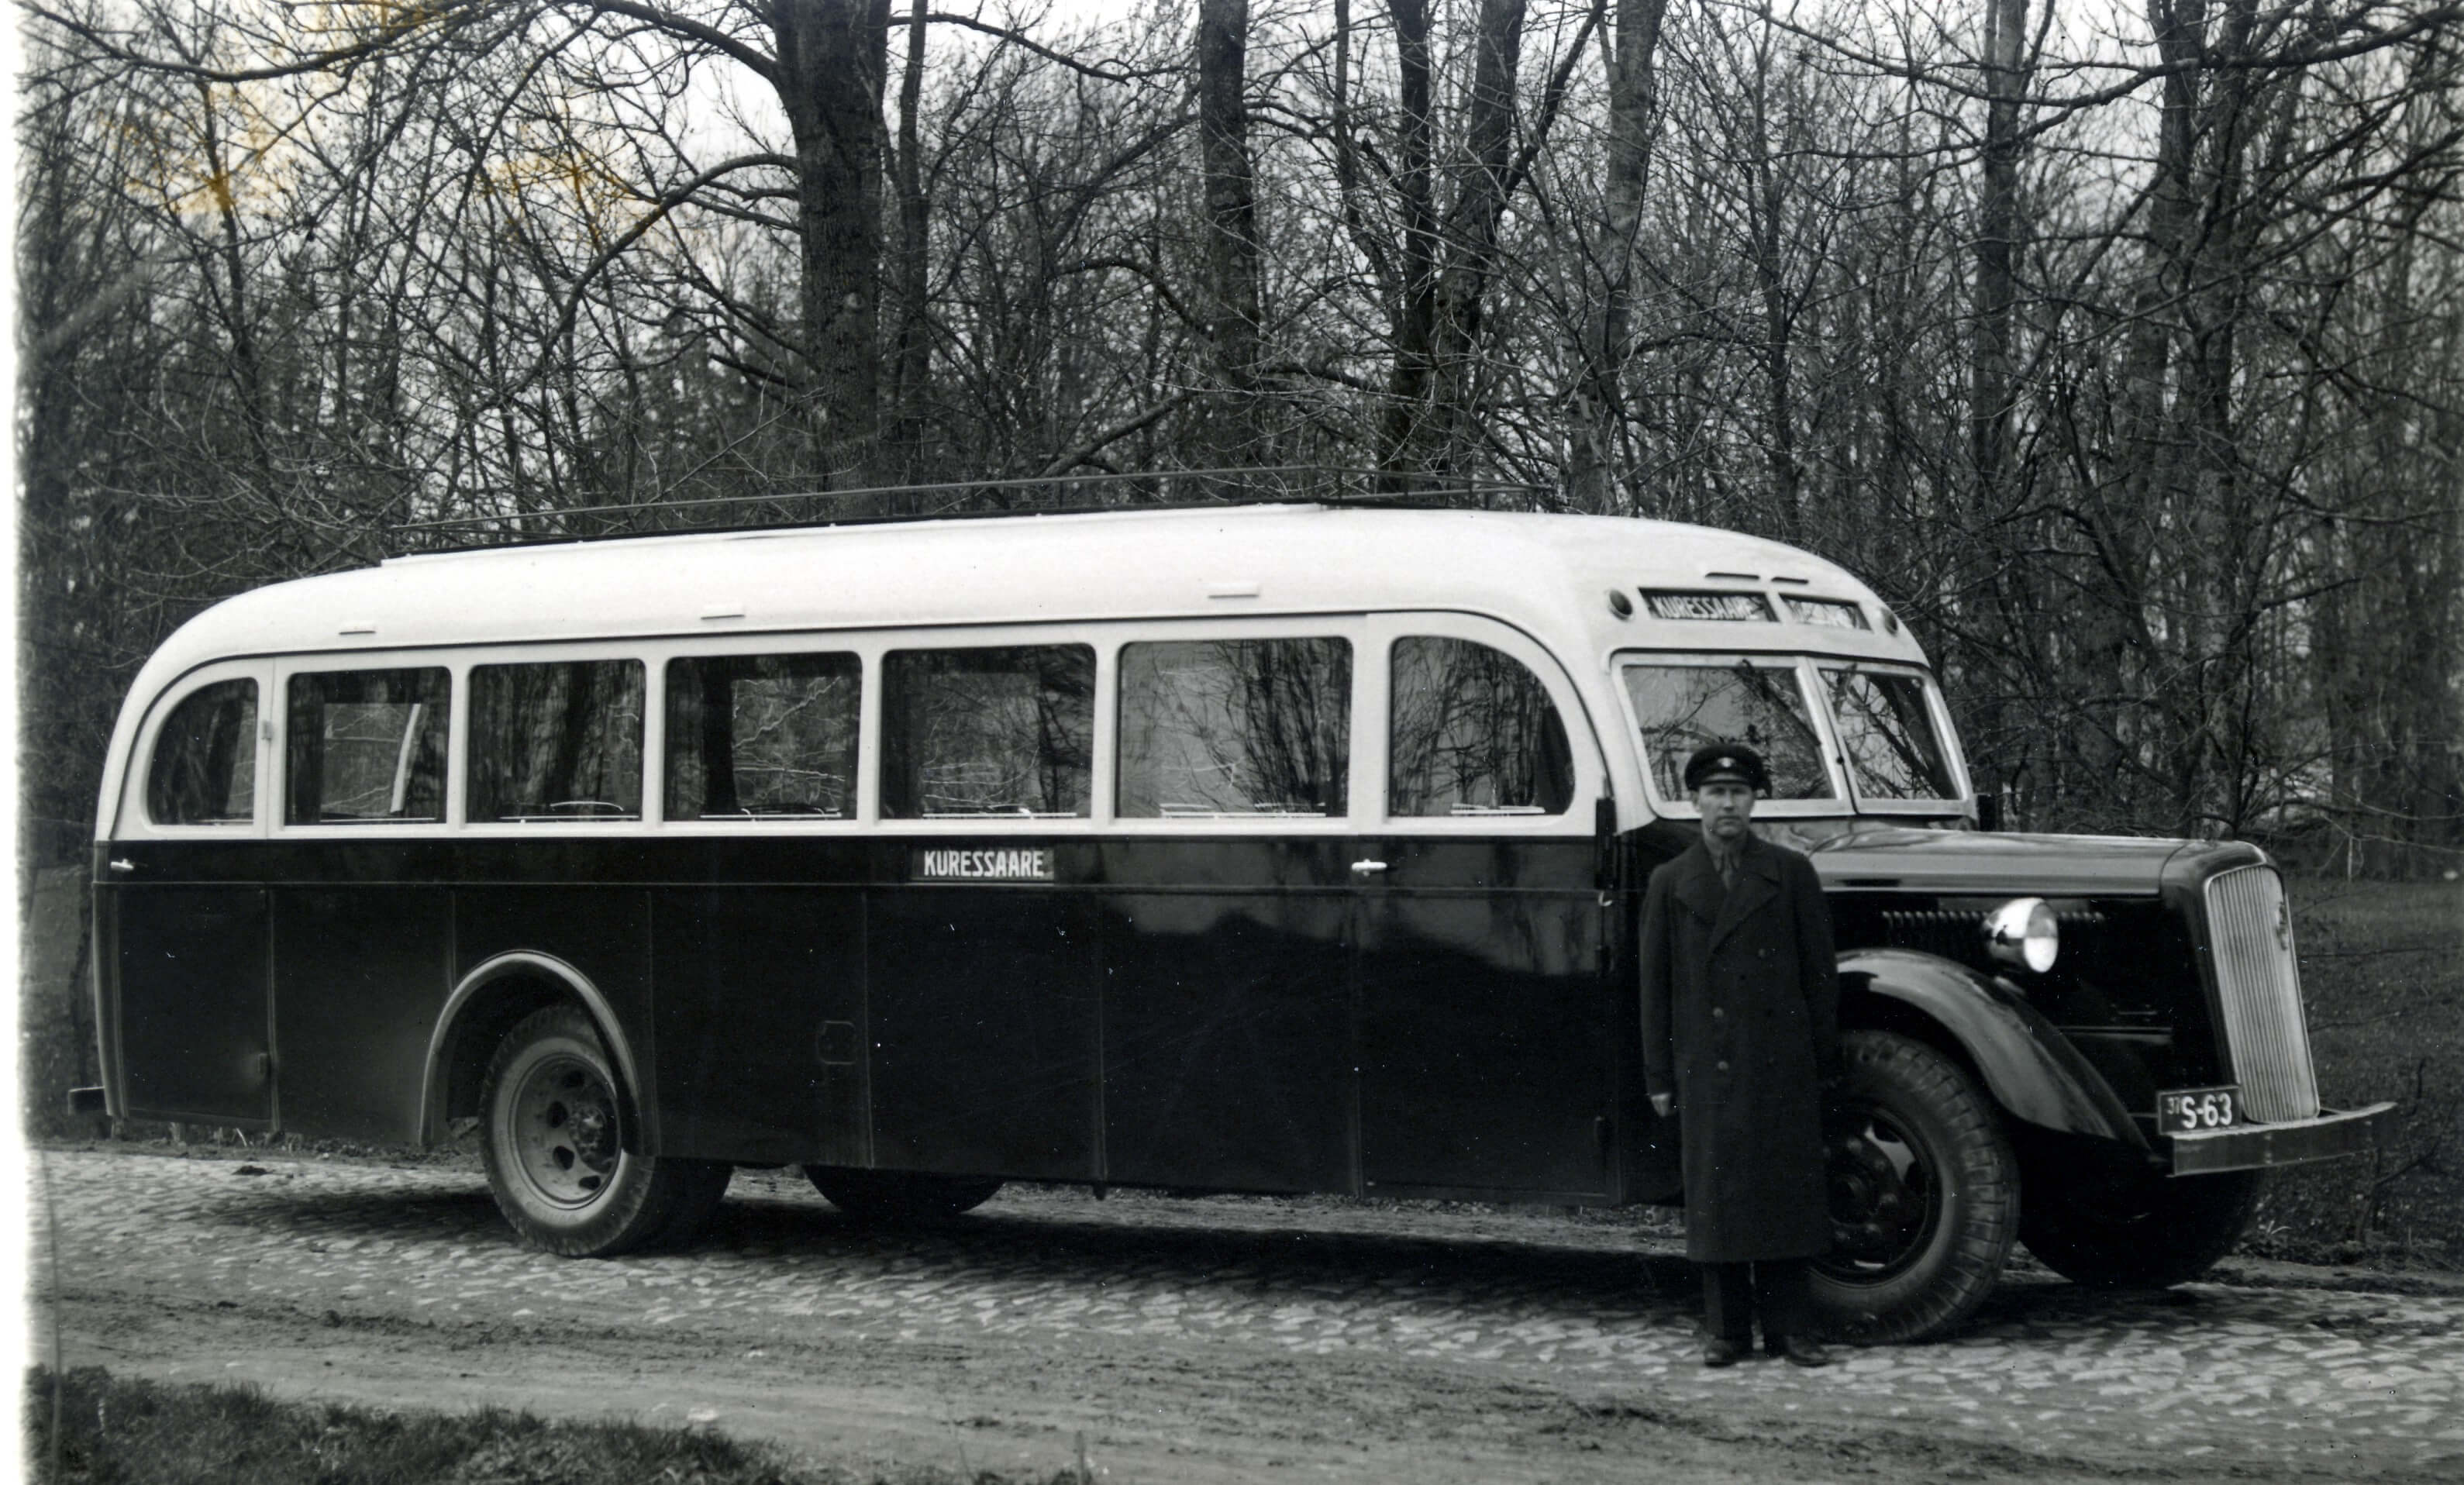 Pikad saarlased. Eesti ühed suurimad liinibussid sõitsid 1939. aastal Kuivastu ja Kuressaare vahel.1938. aastal tõi liinipidamise ja transpordi osaühing “Ühendus” siin liinile 55-kohalise Reo šassiile valminud bussi. 1939. aastal taotles ettevõte Maanteede Talituselt 9,5-tonnise üldkaaluga Volvole ehitatud bussi samale liinile toomist (fotol). Saare maavalitsus nõustus bussi liikvele laskma vaid Kuressaare–Kuivastu maanteel. Teisi tollase Saaremaa teid hinnati selle bussi jaoks liiga kitsaiks ja kõveraiks. 